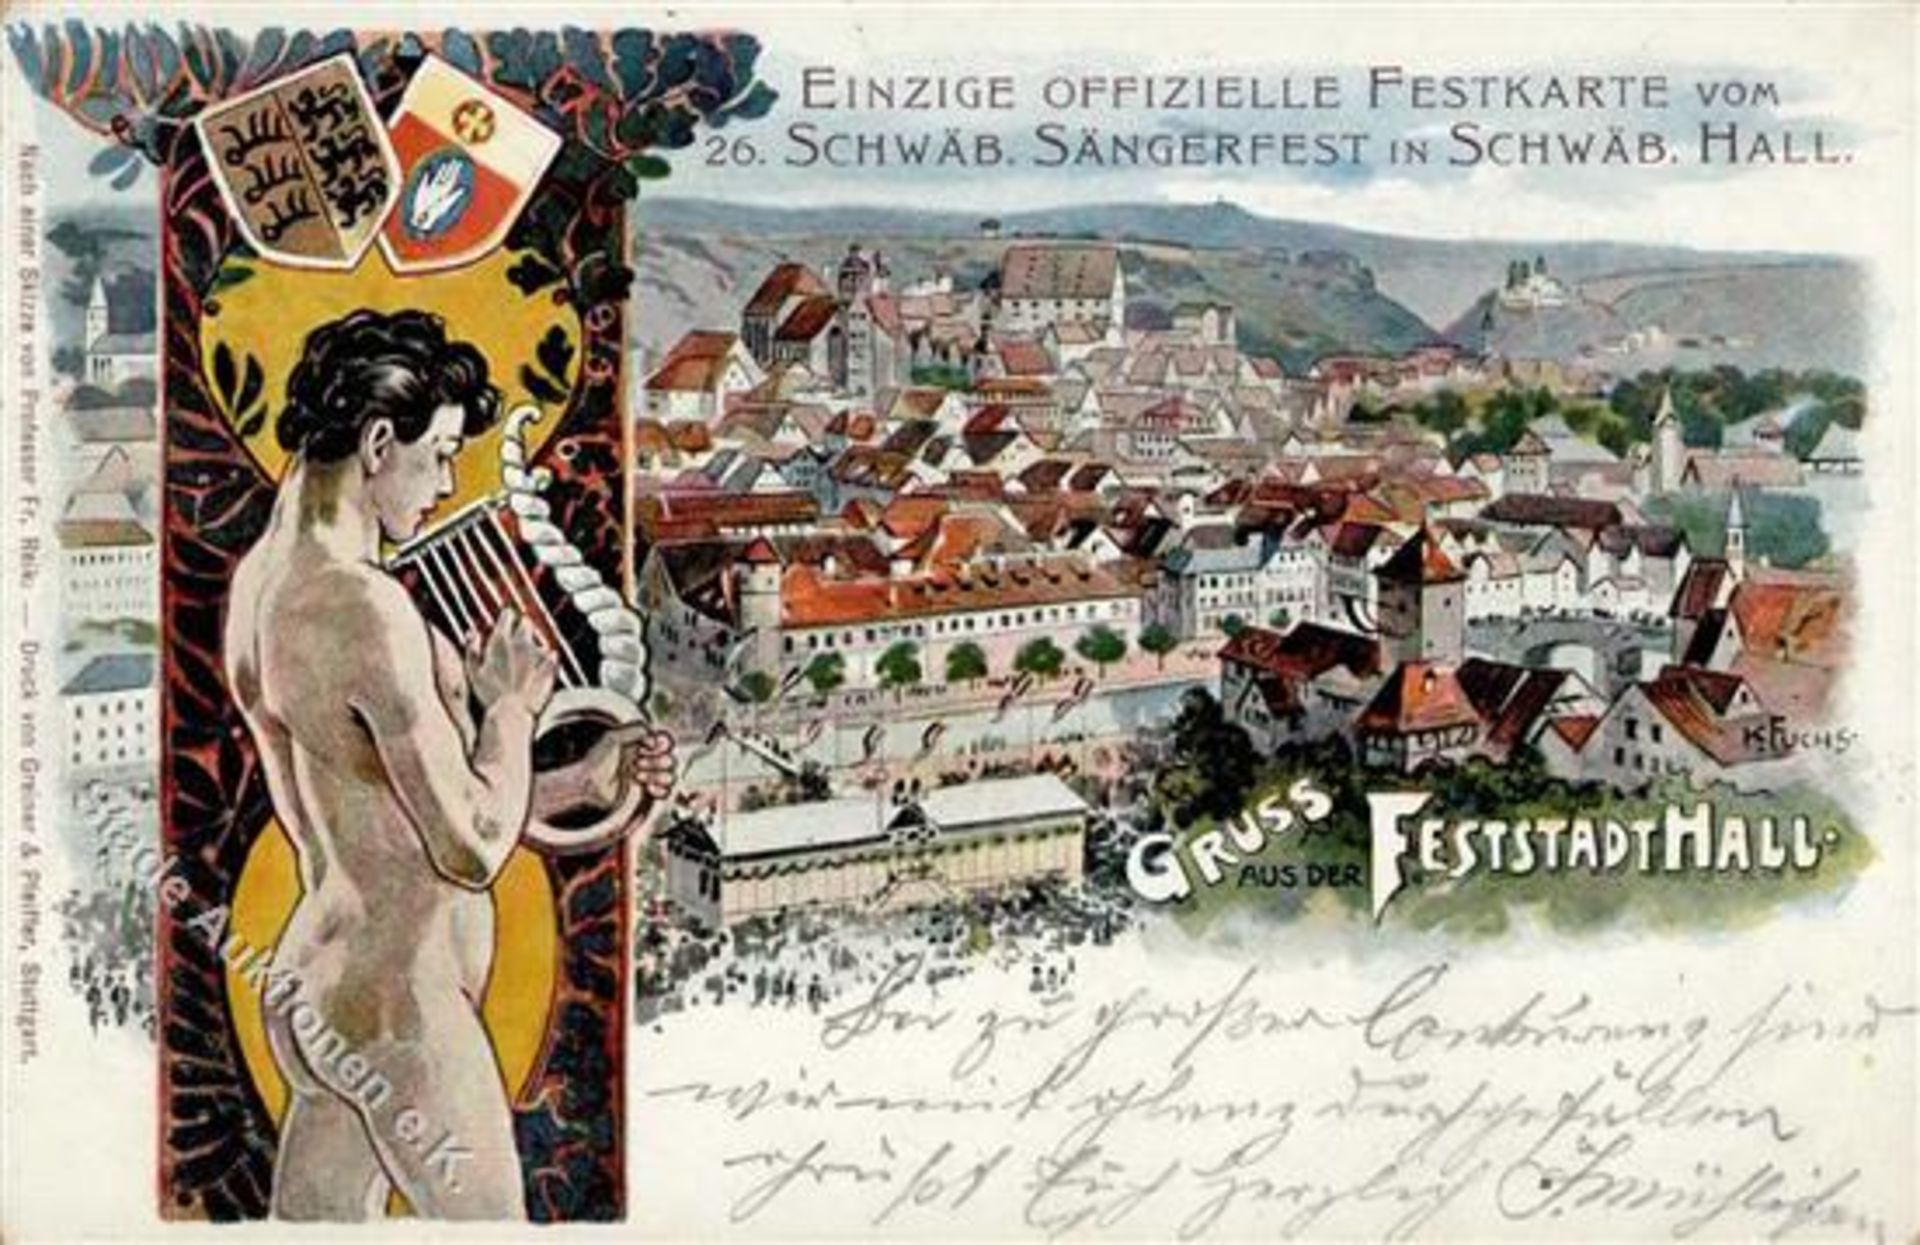 Schwäbisch Hall (7170) 26. Schwäbisches Sängerfest 30. Juni bis 1. Juli 1901 sign. Fuchs